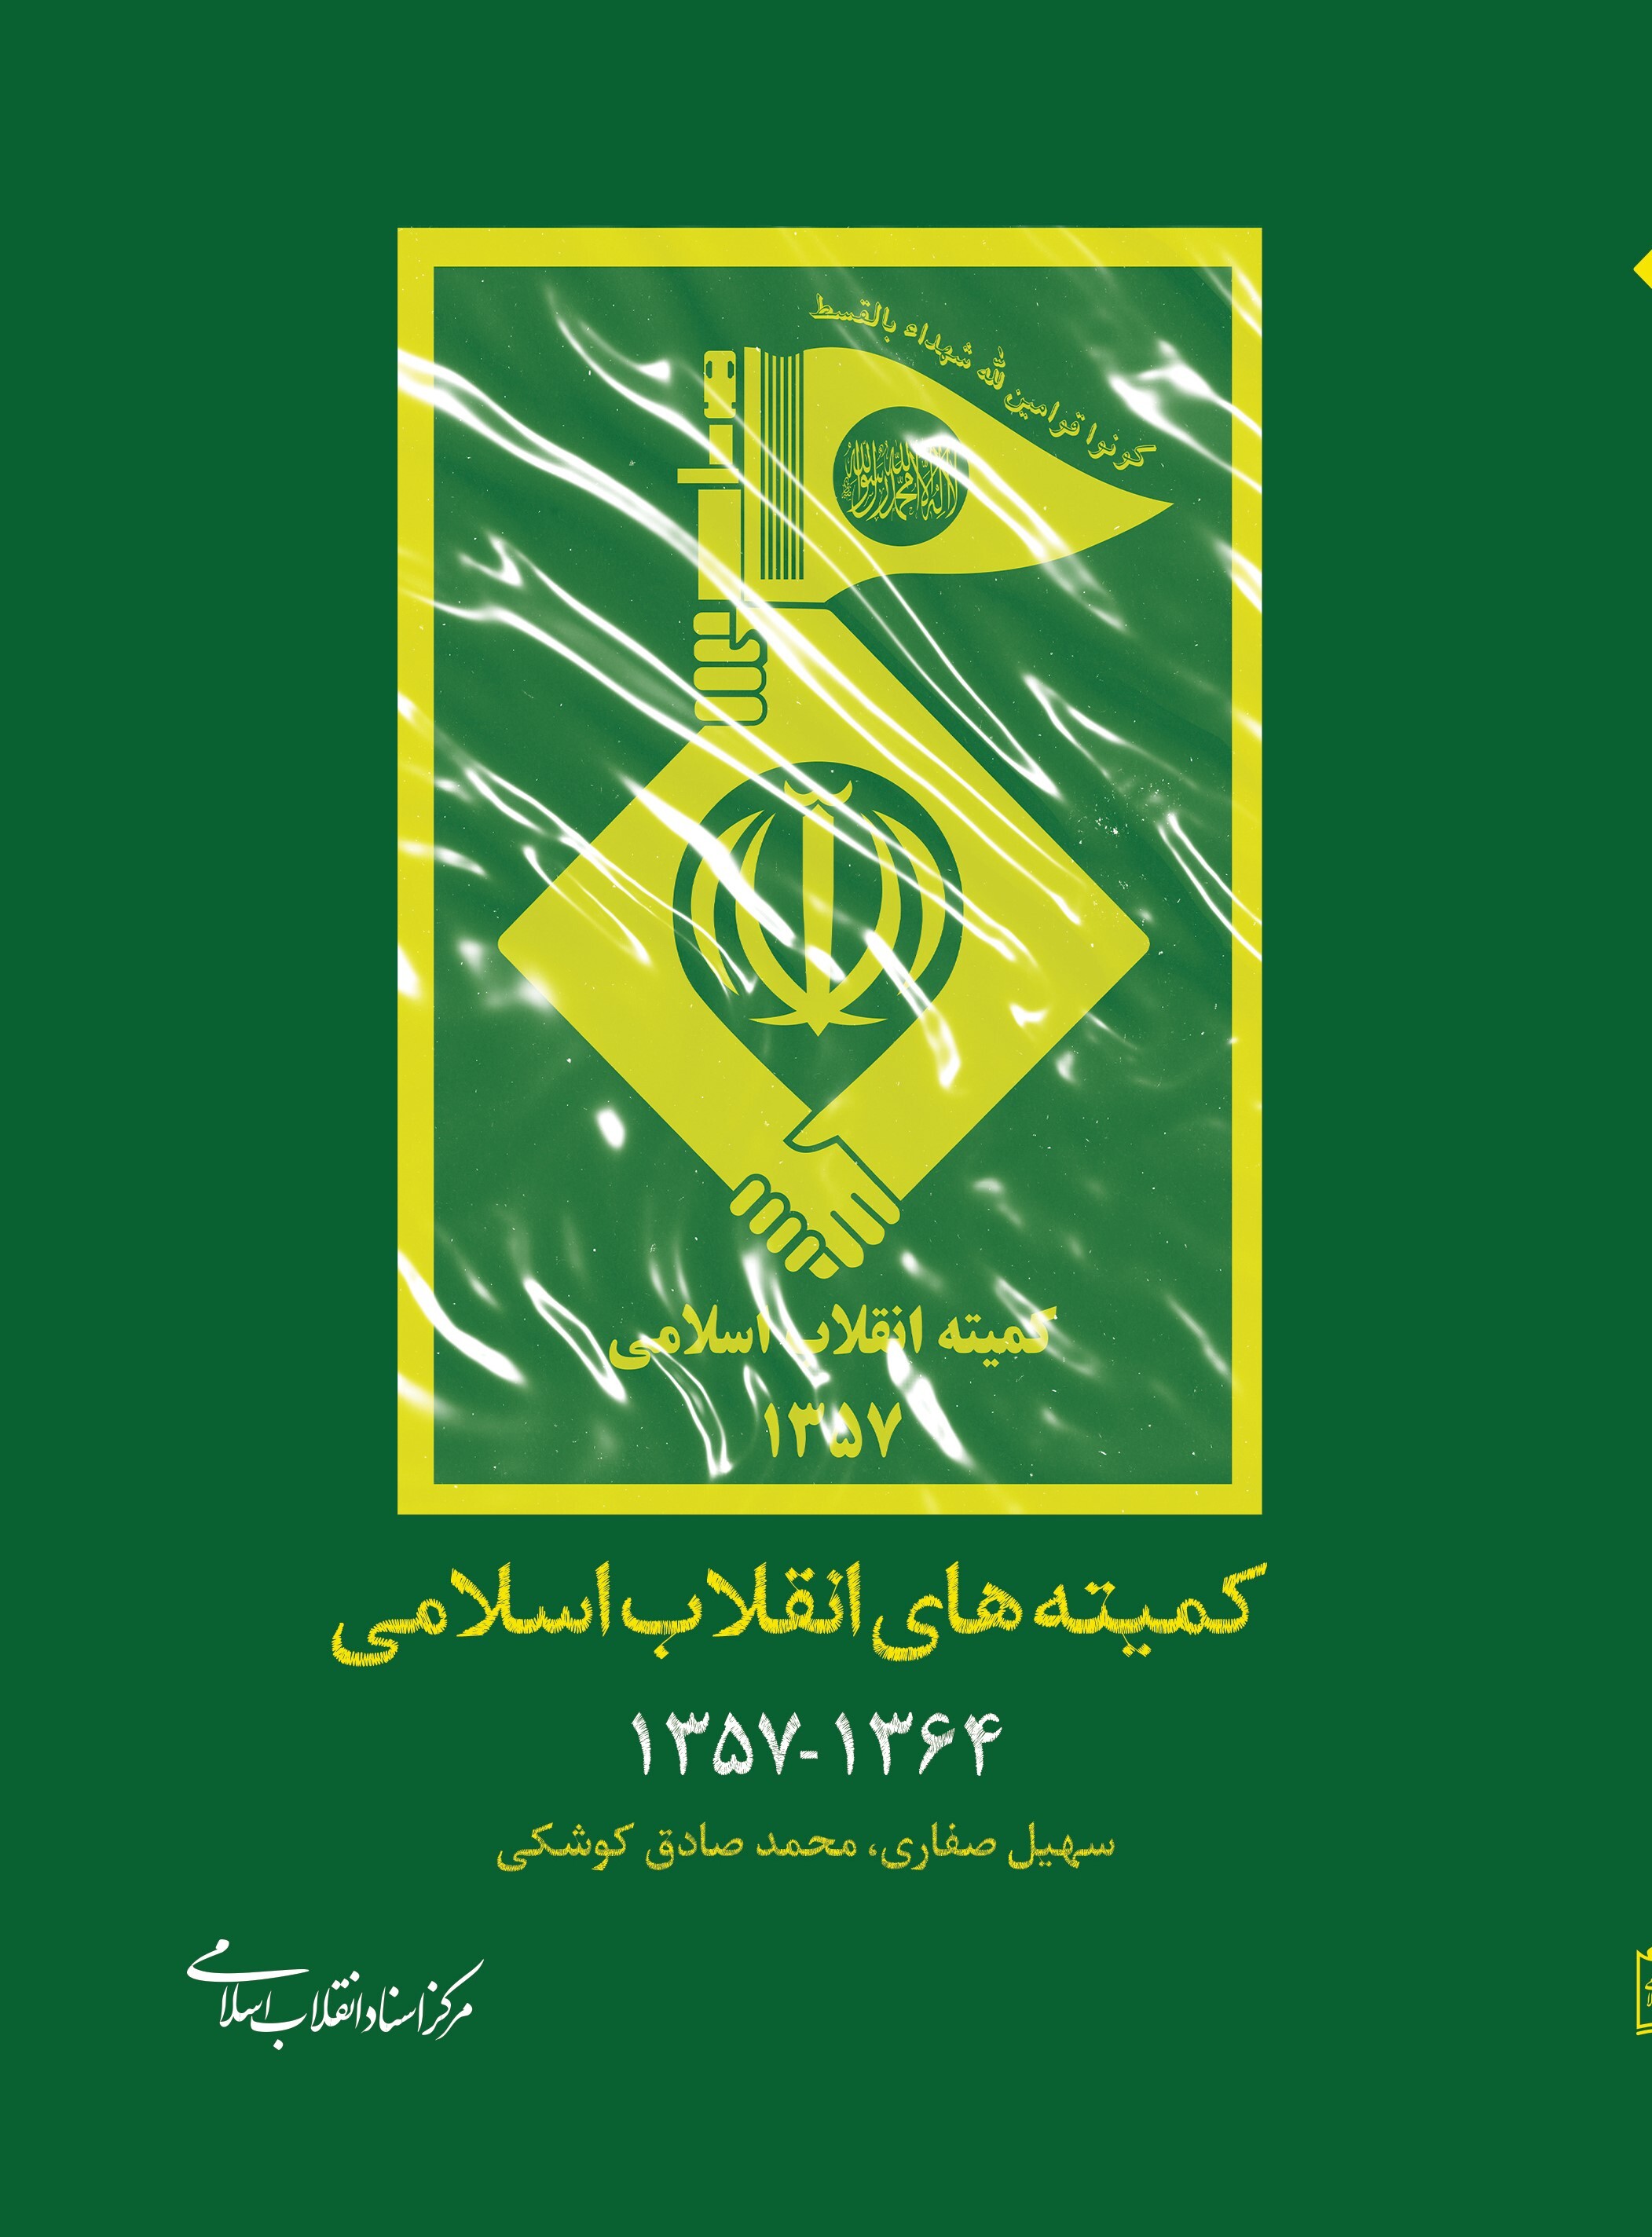 کمیته های انقلاب اسلامی ۱۳۵۷ - ۱۳۶۴